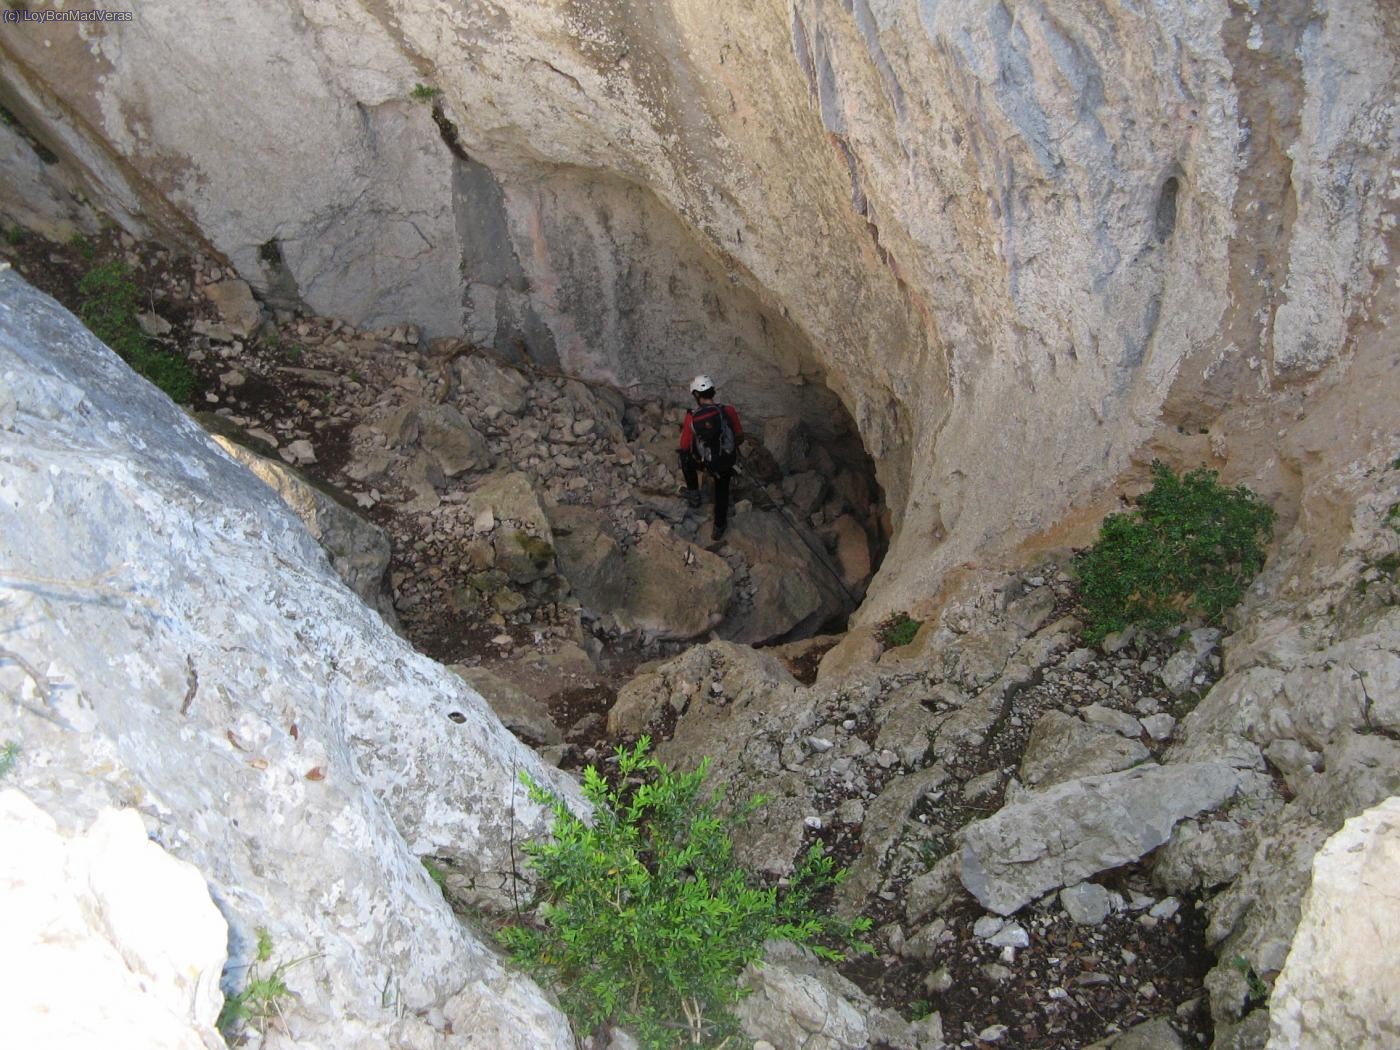 Despues de cruzar la primera parte de la cueva, ascendemos a la izquierda, camino evidente